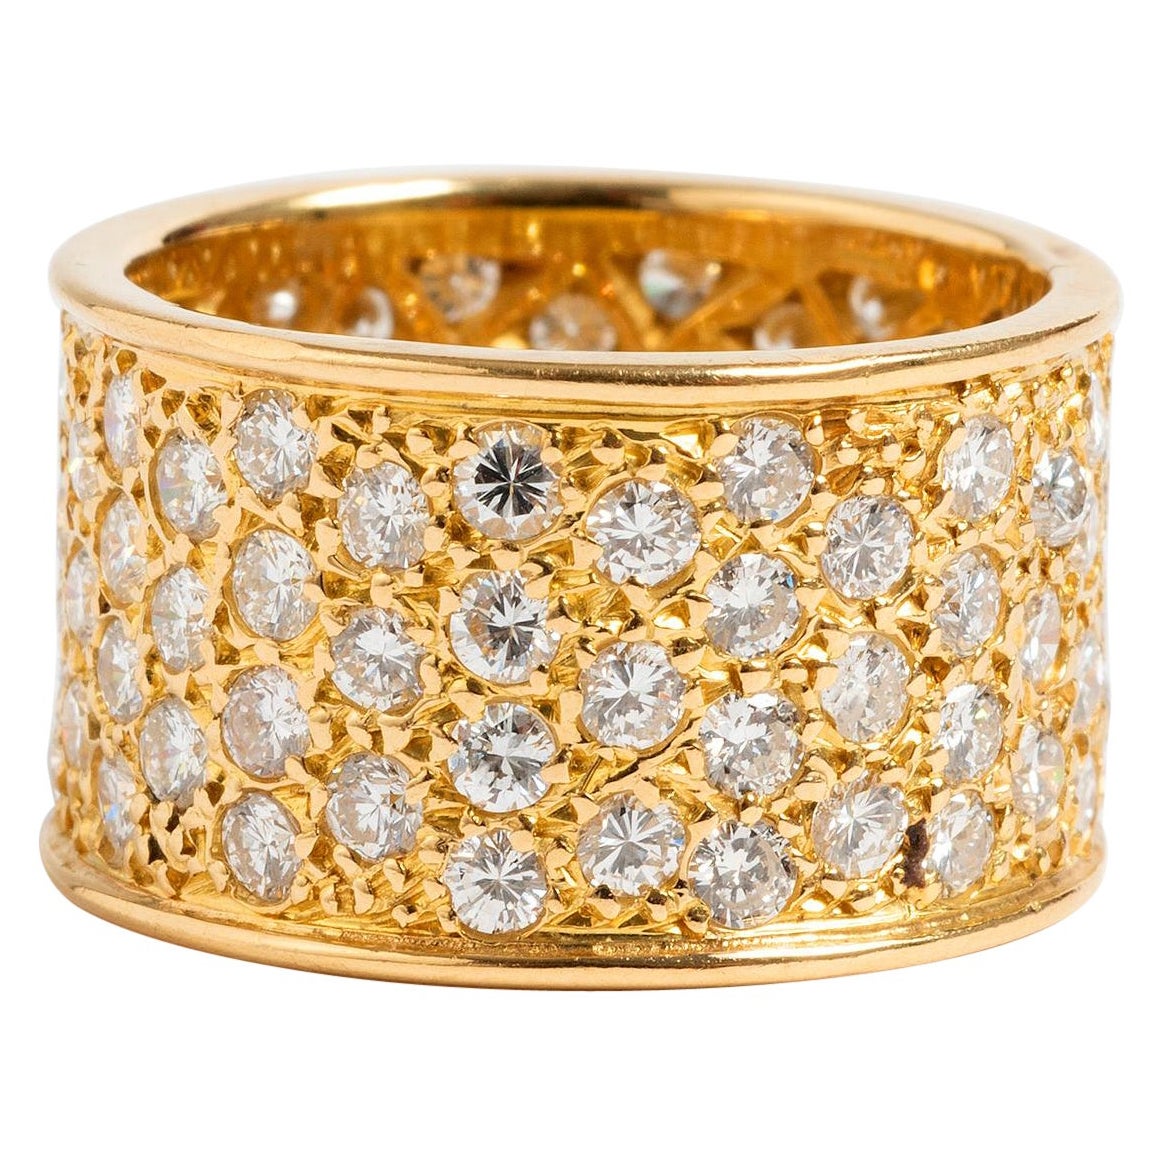 Glamorous Pave Set Diamond Ring, 18K Yellow Gold